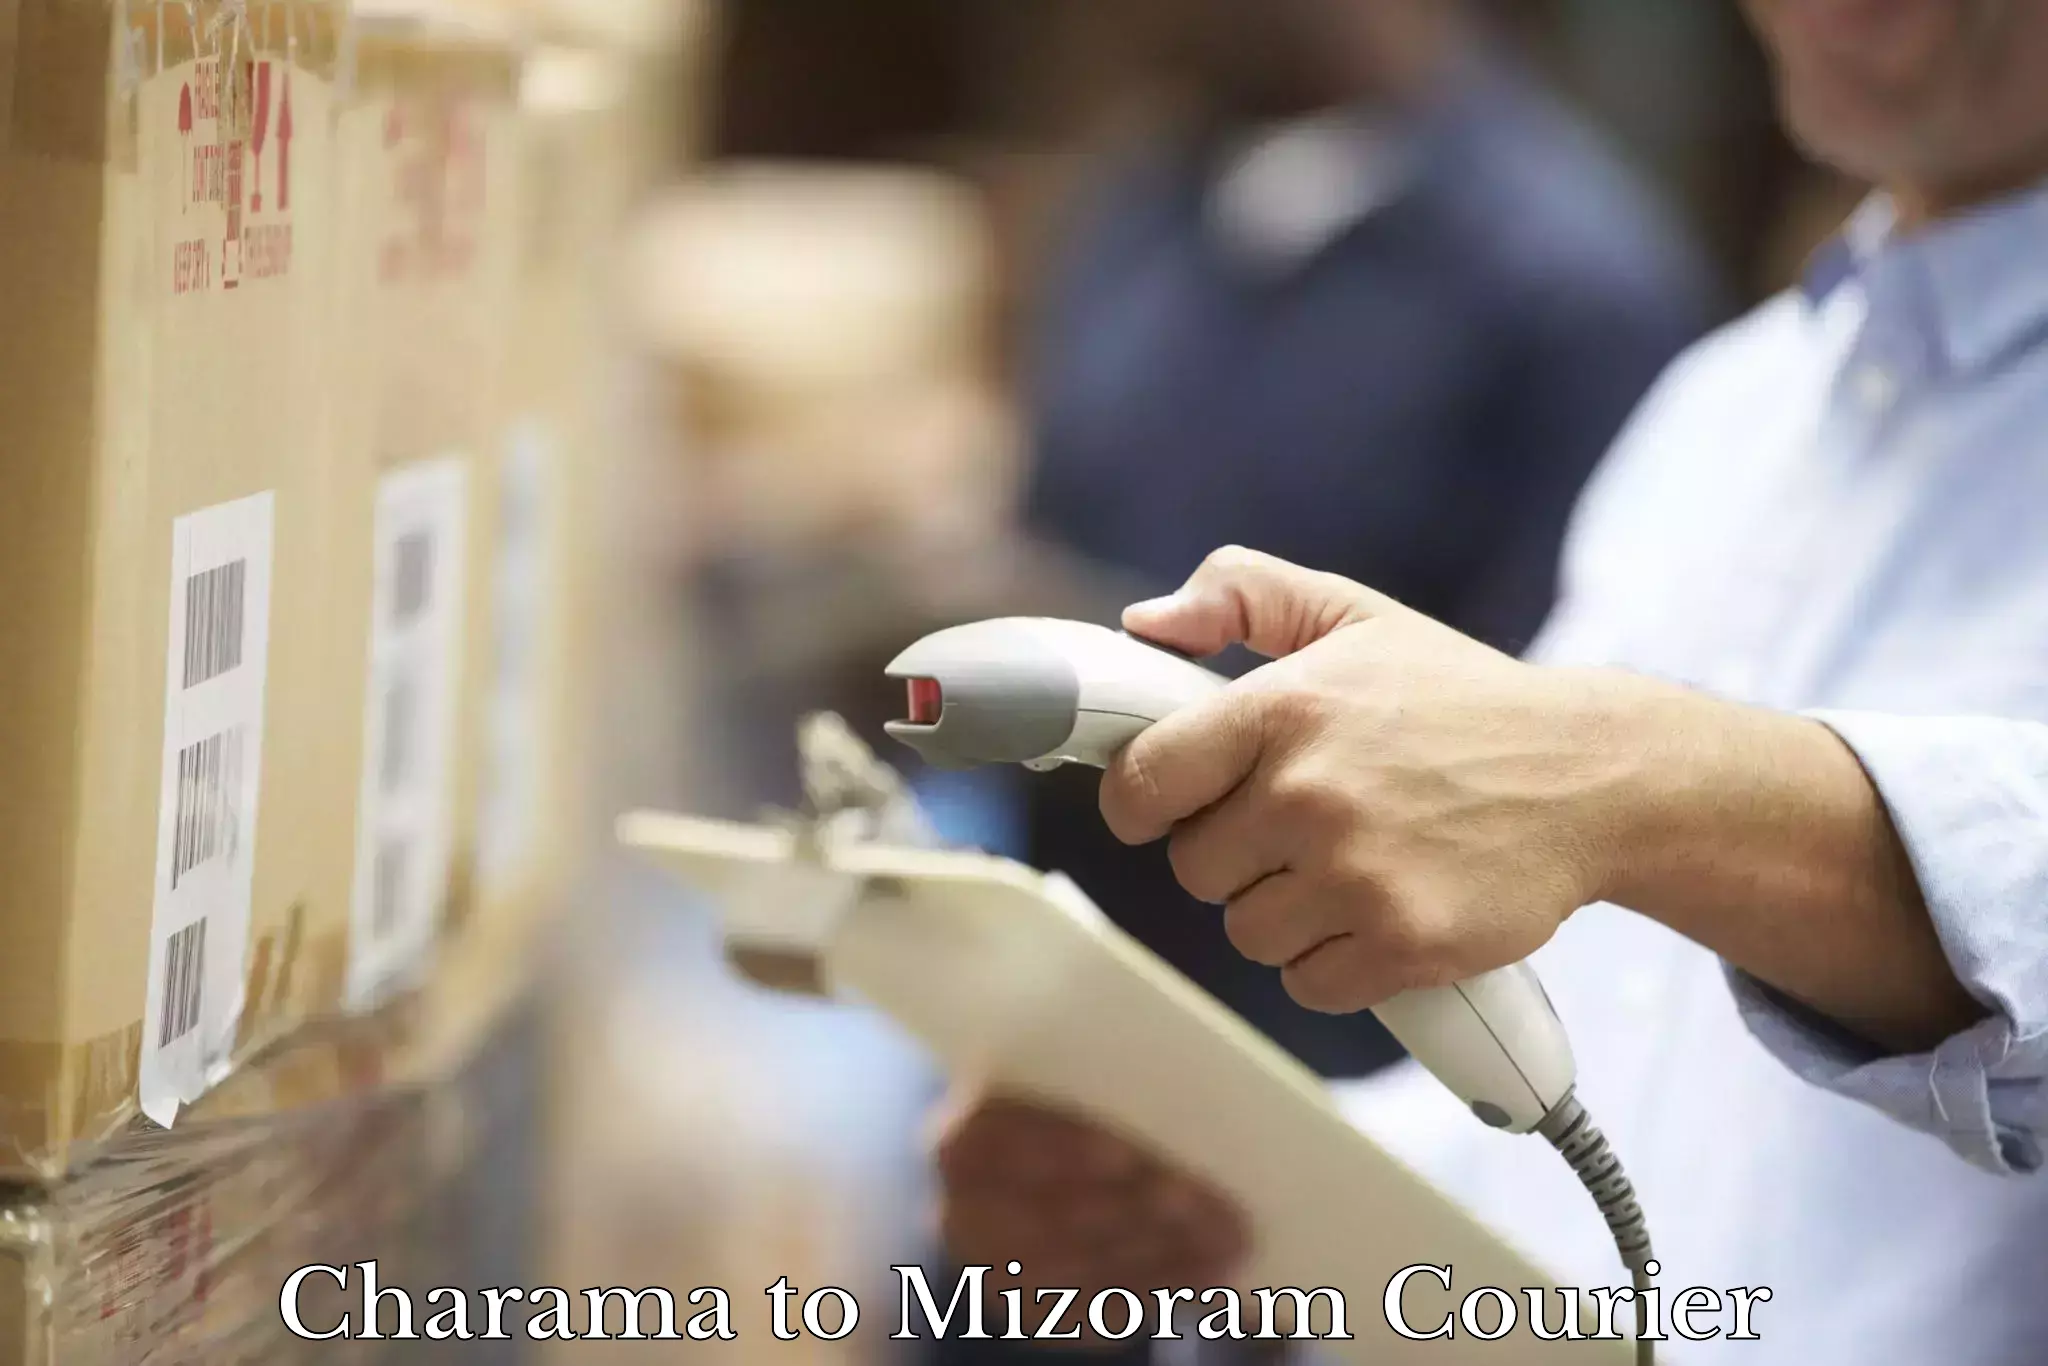 Multi-city courier Charama to Mizoram